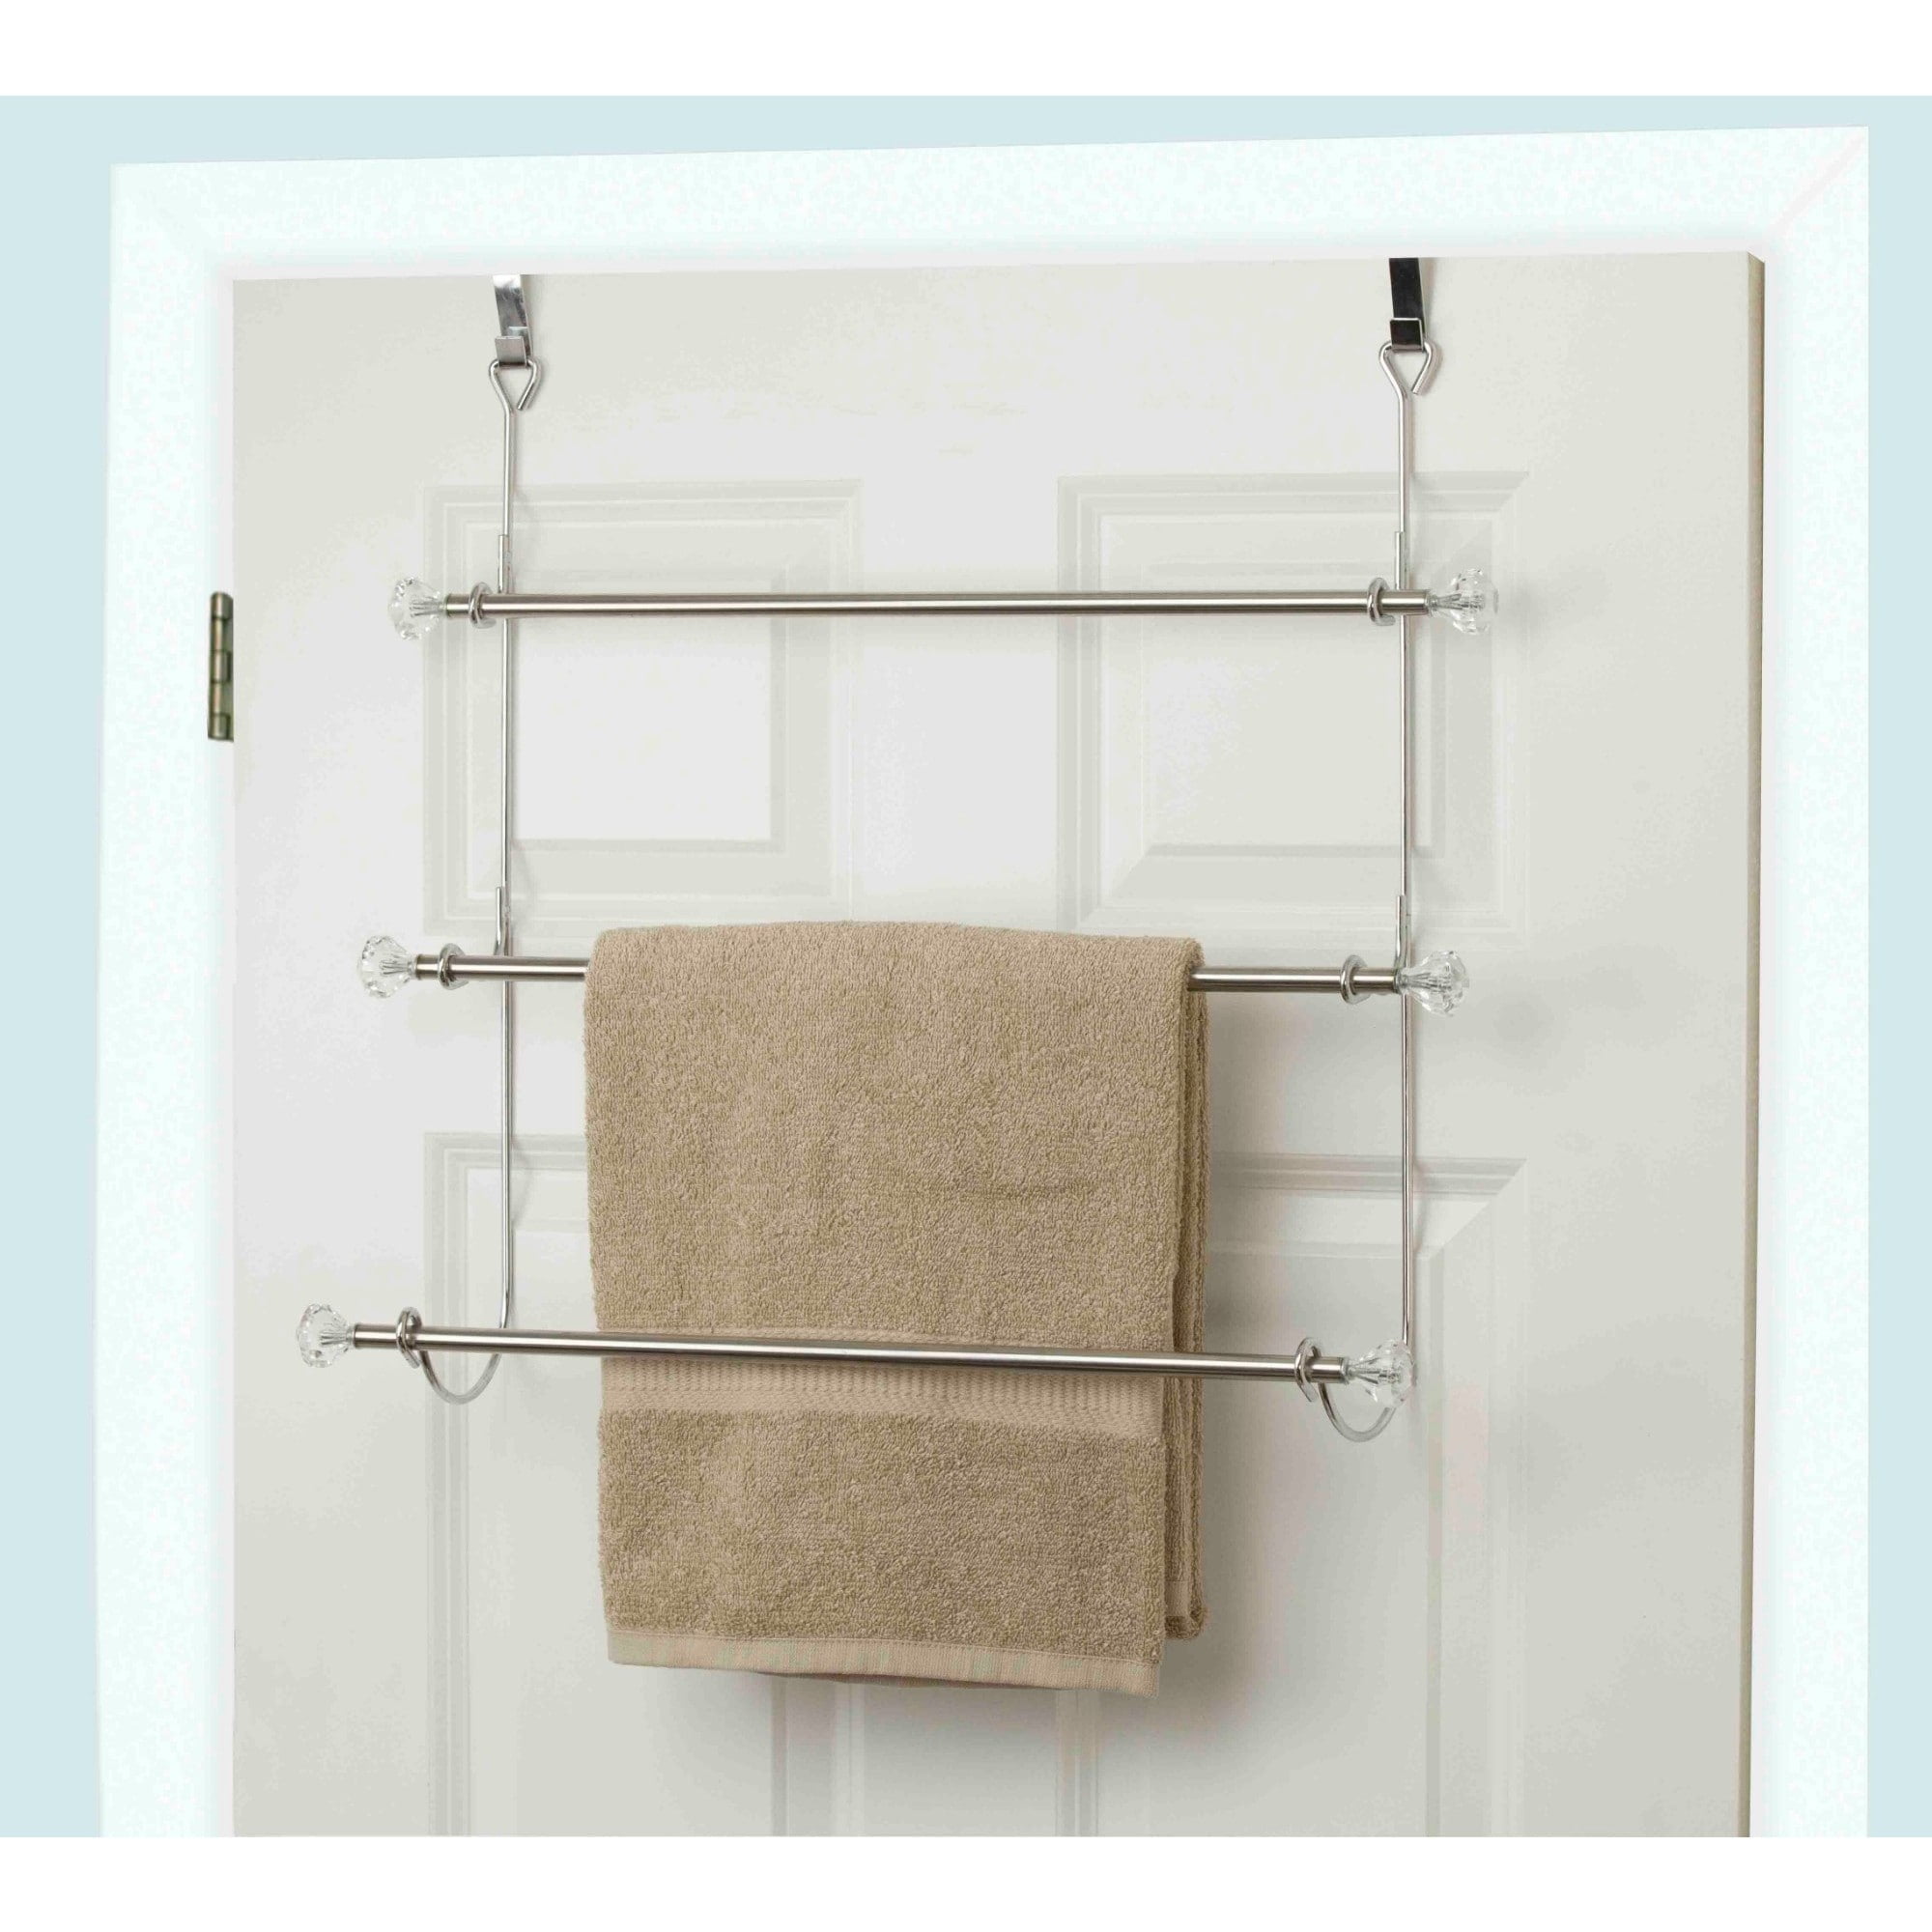 The Door Towel Rack, Towel Rack For Bathroom Door